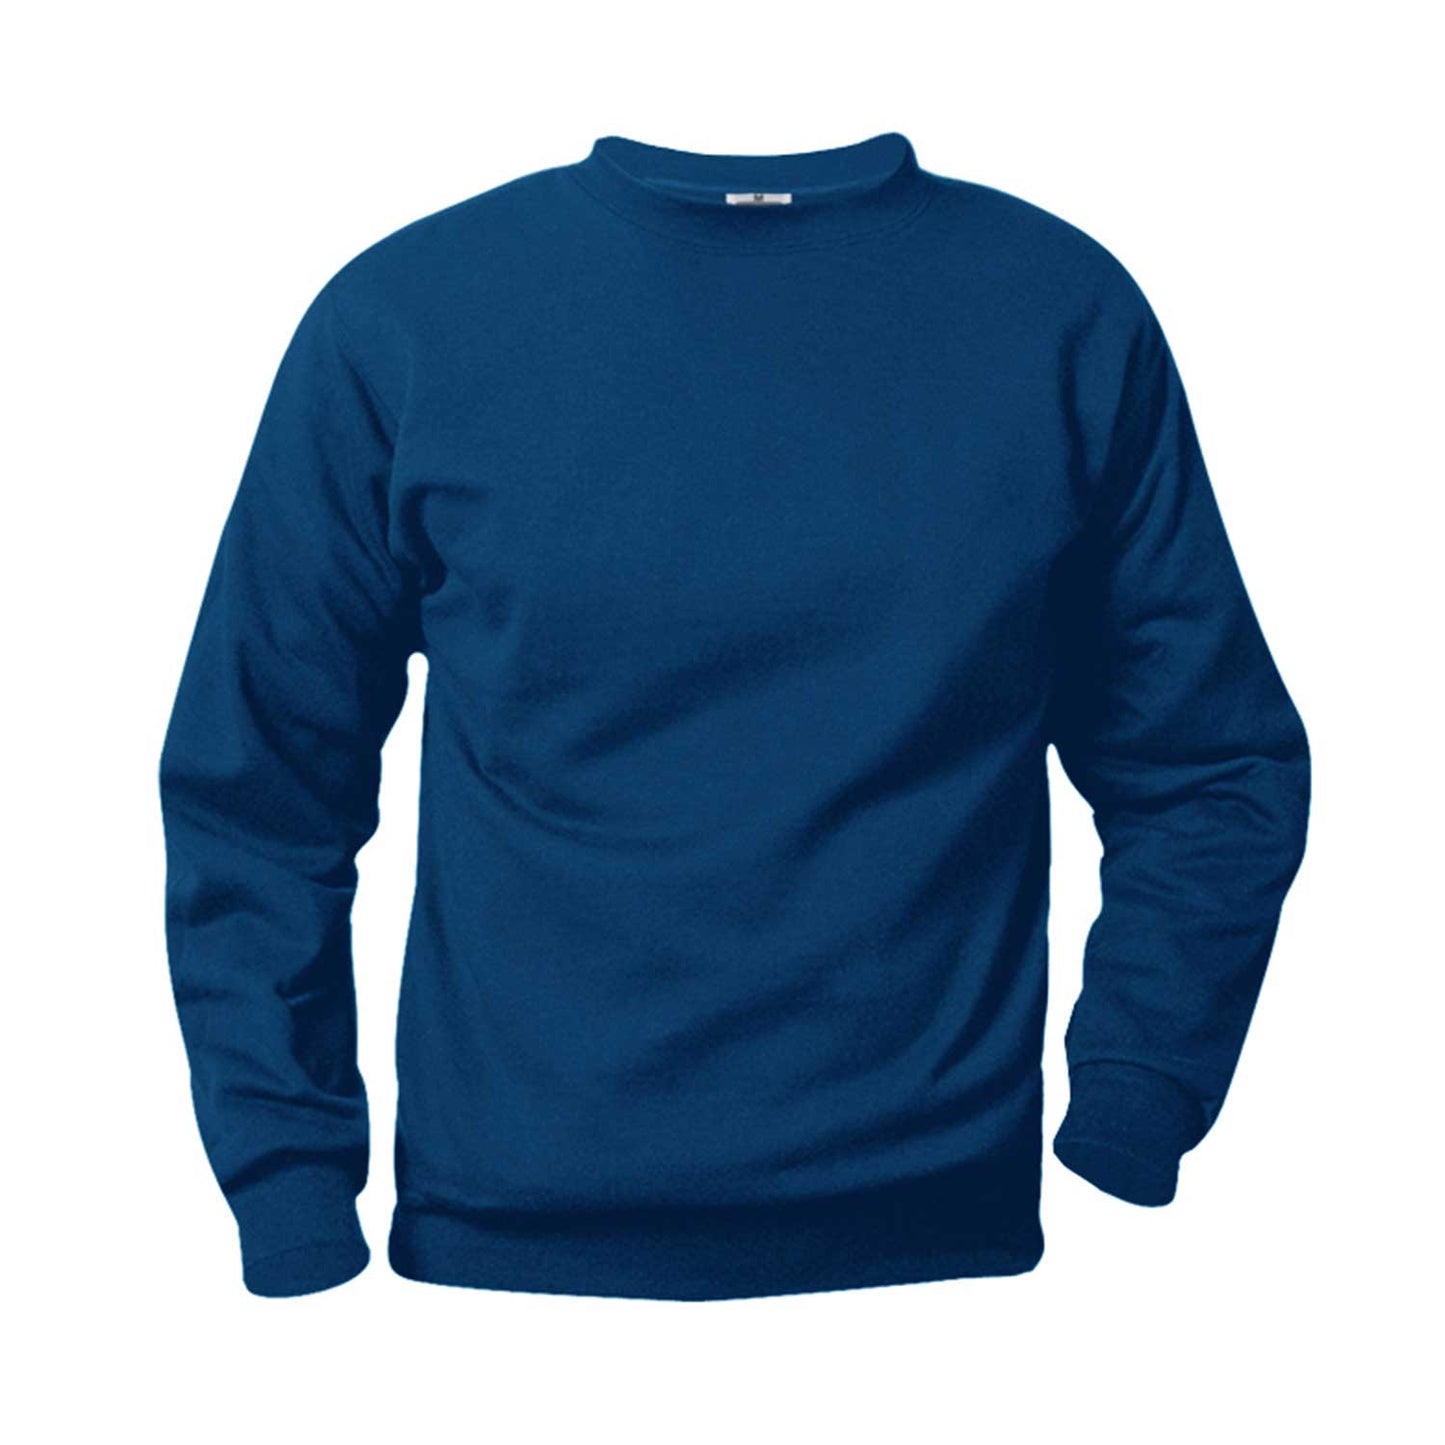 Unisex Crewneck Fleece Sweatshirt w/ Logo - 1303